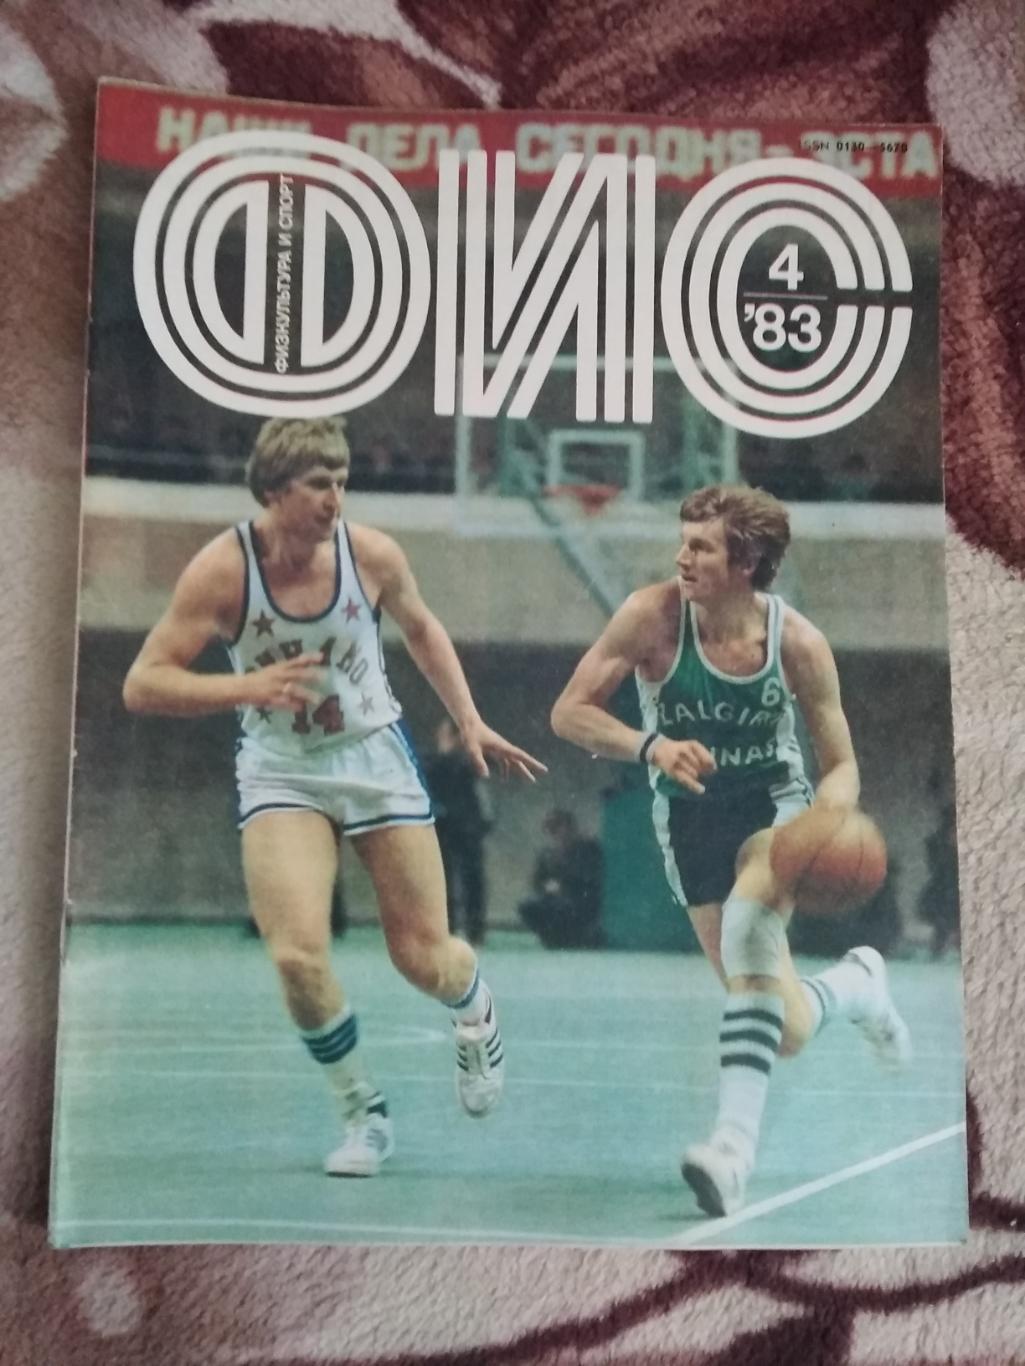 Журнал.Физкультура и спорт № 4 1983 г. (ФиС).